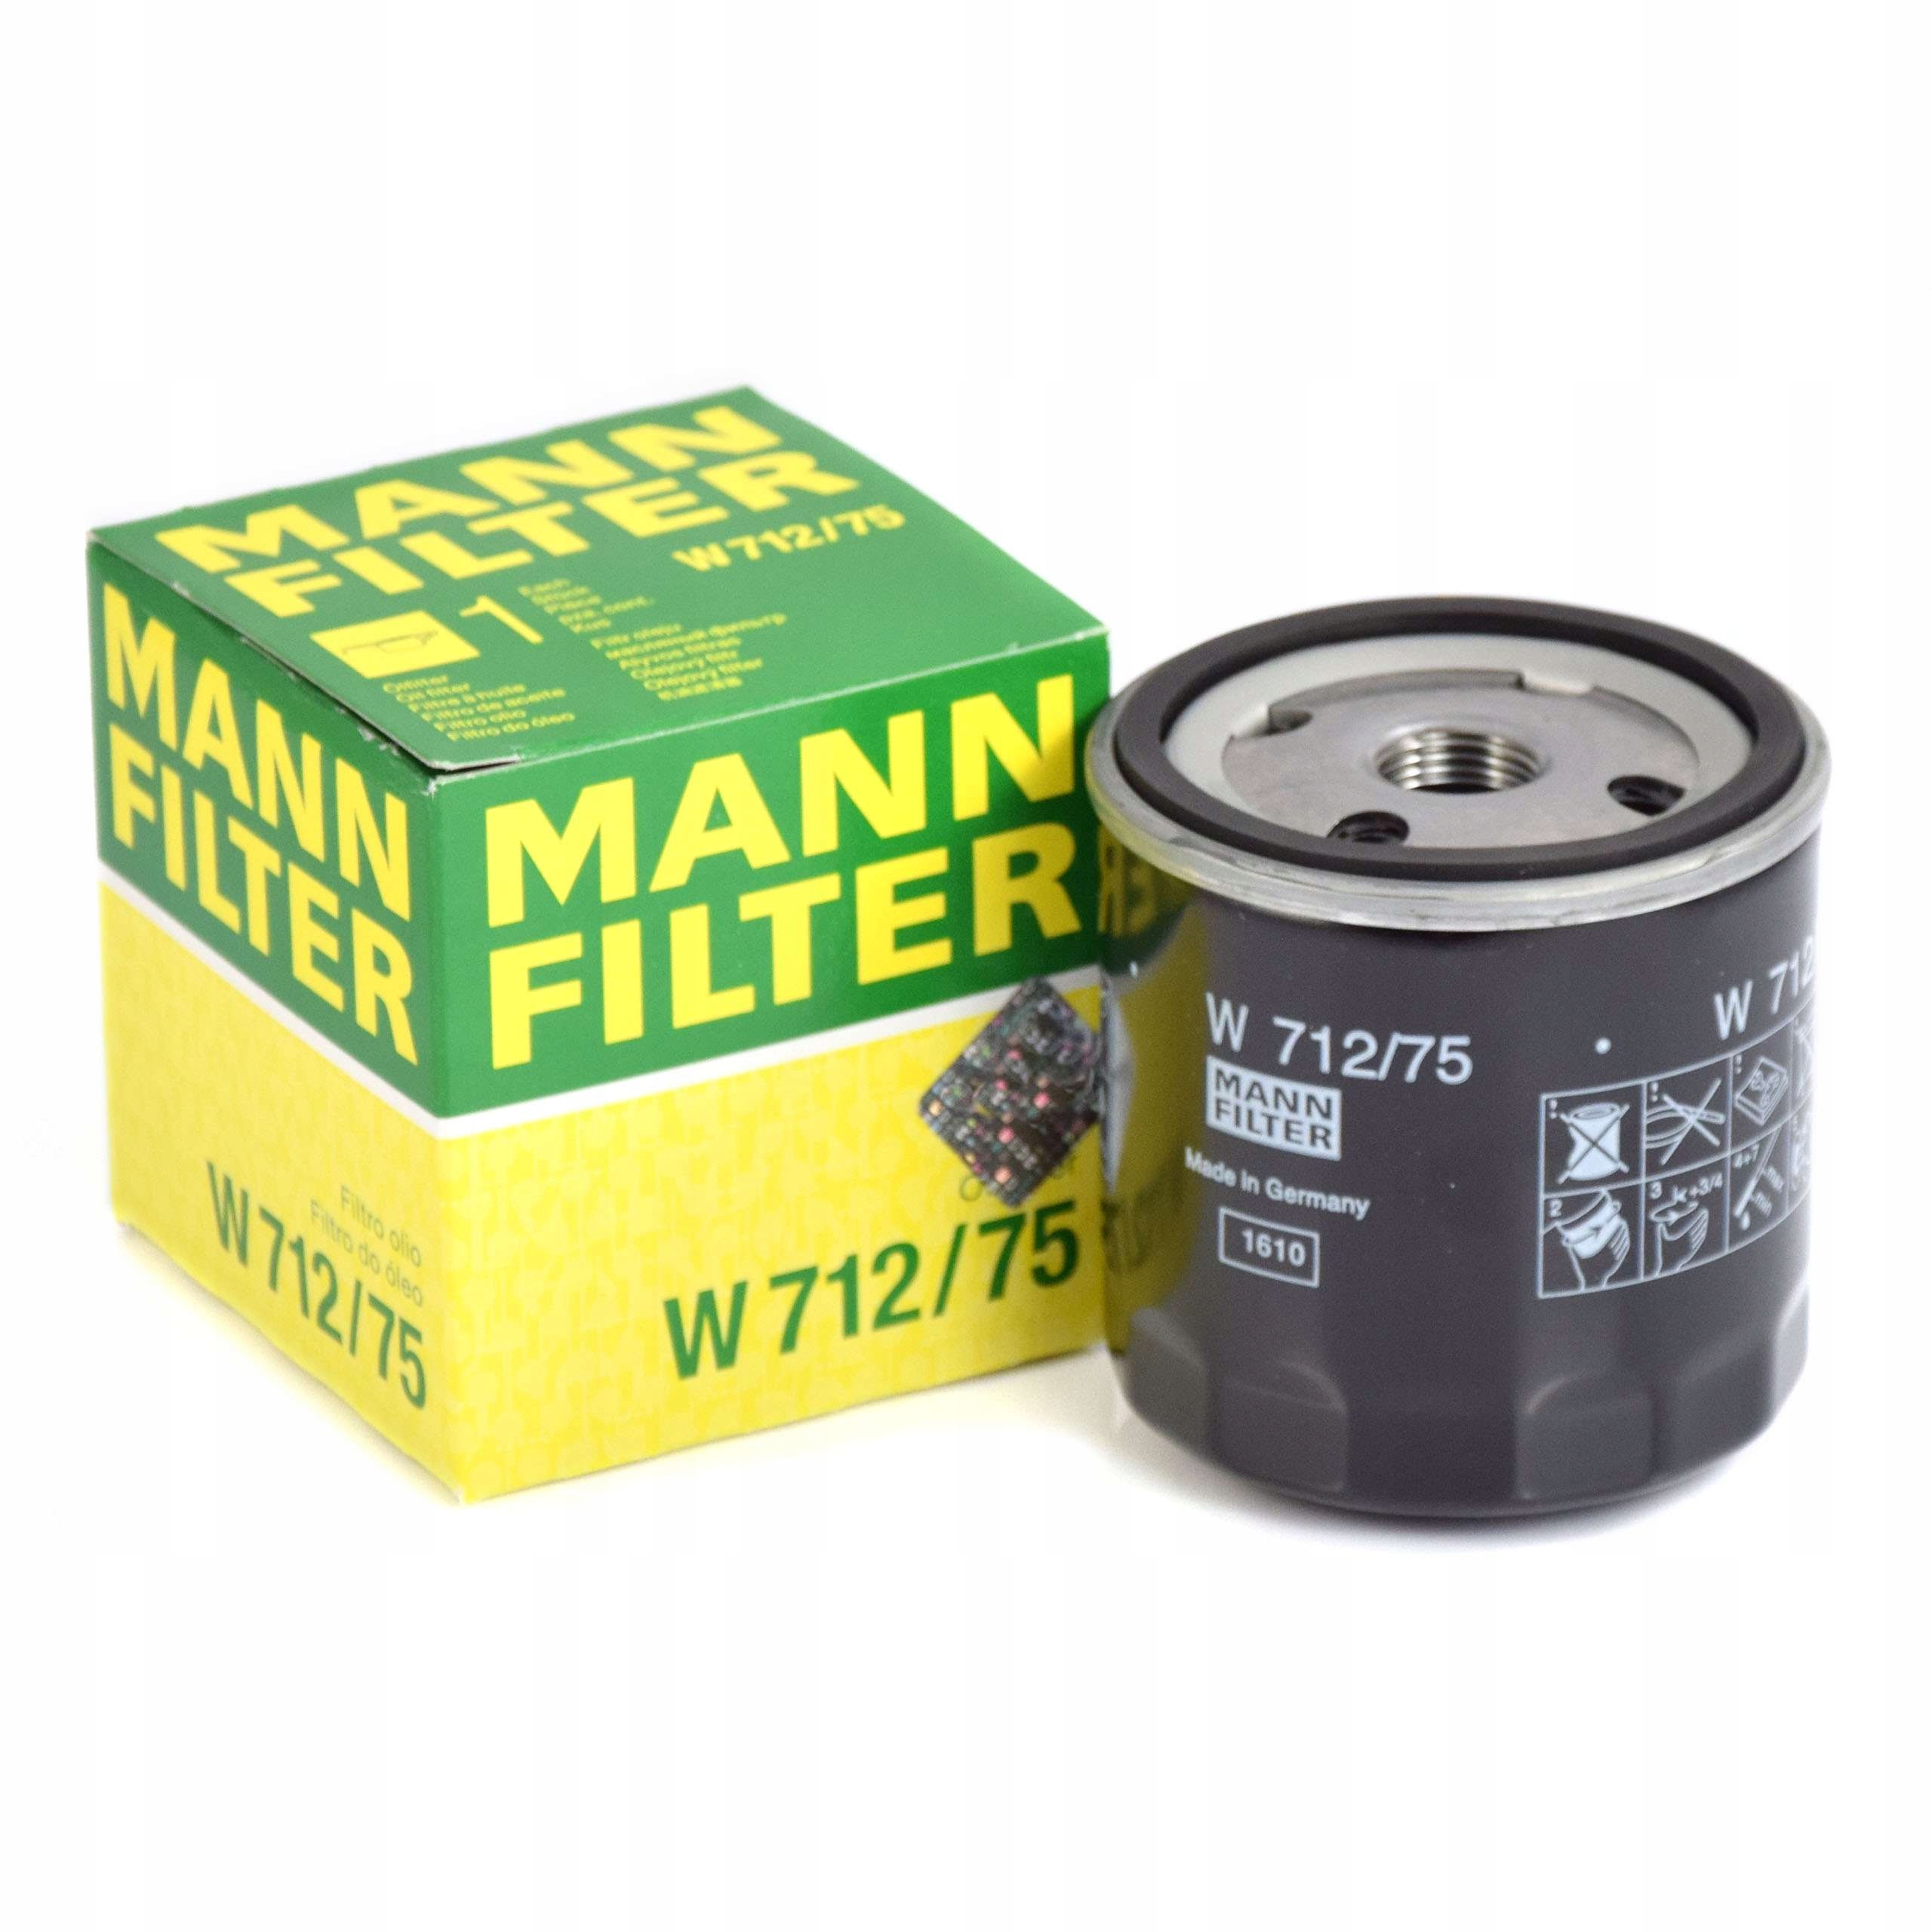 W67 1 фильтр масляный. Фильтр масляный Mann hu7019z. Фильтр масляный Mann-Filter w712/75. Фильтр масляный Mann hu816x. Масляный фильтр MANNFILTER w67.